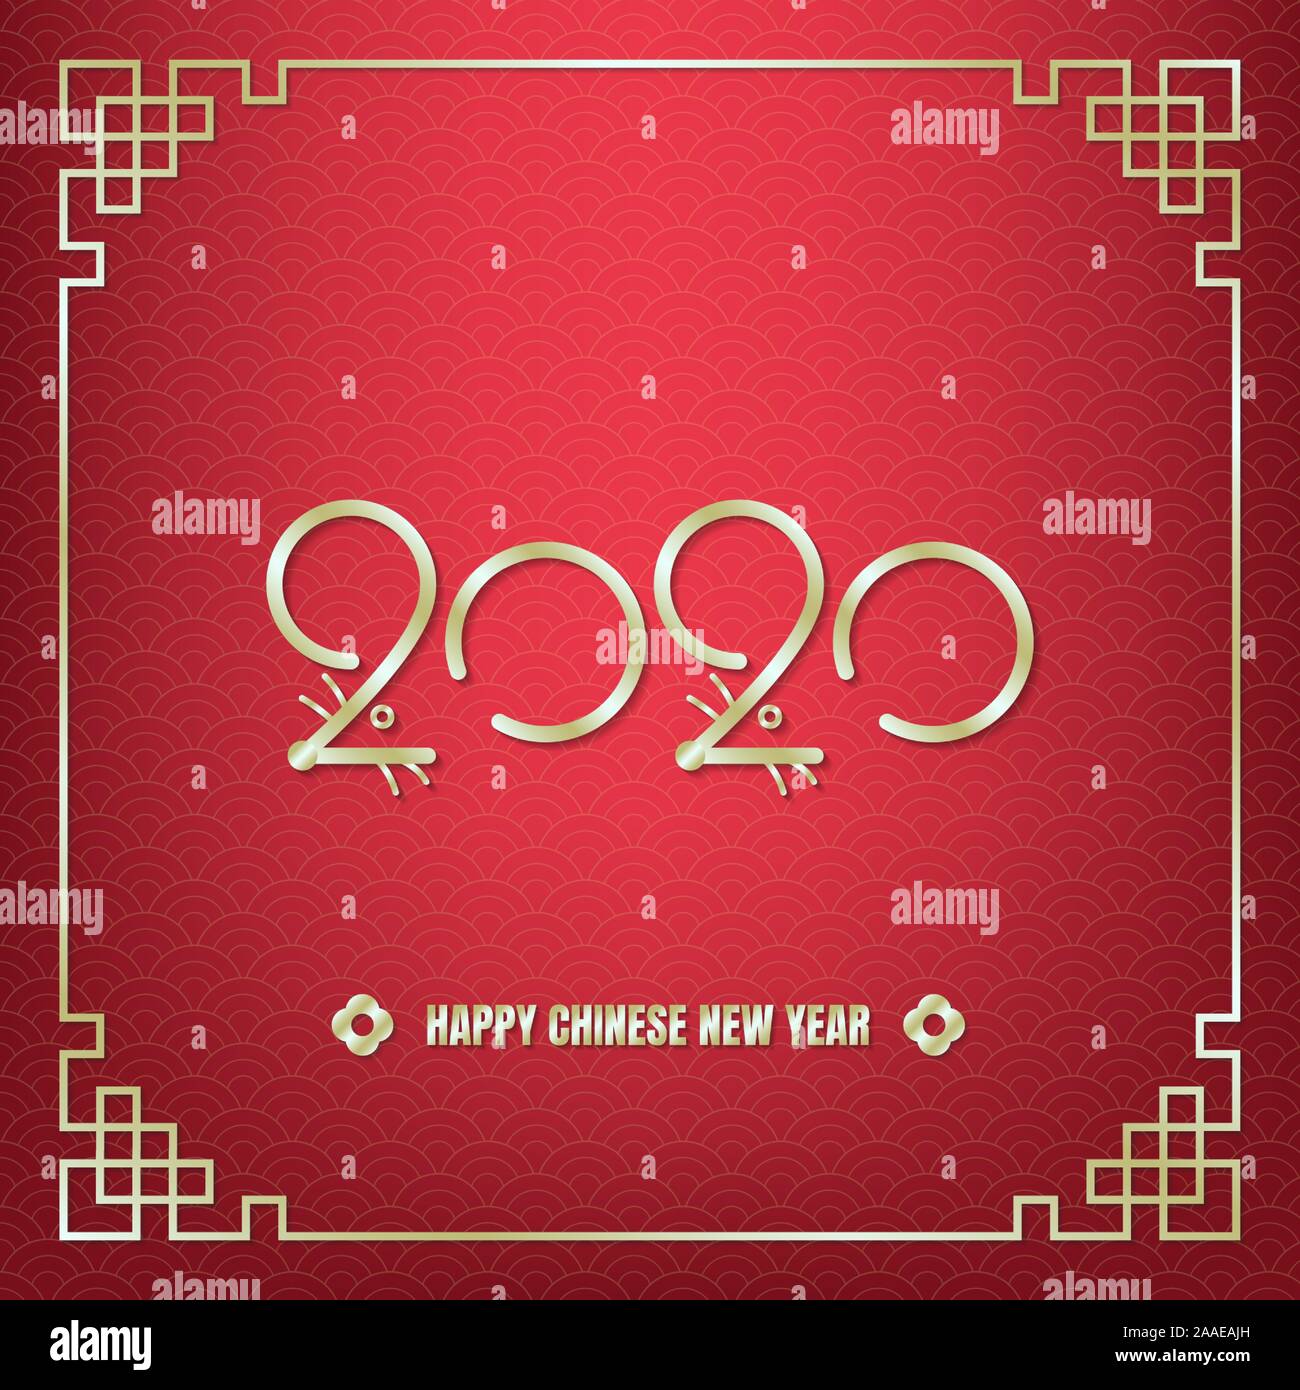 Frohes Chinesisches neues Jahr, Jahr der Ratte Feier, Gold 2020 Nummer mit Ratte Ohren, Nasen, Augen und Schnurrhaare in Line Art Style innerhalb von orientalischen Rahmen Stock Vektor